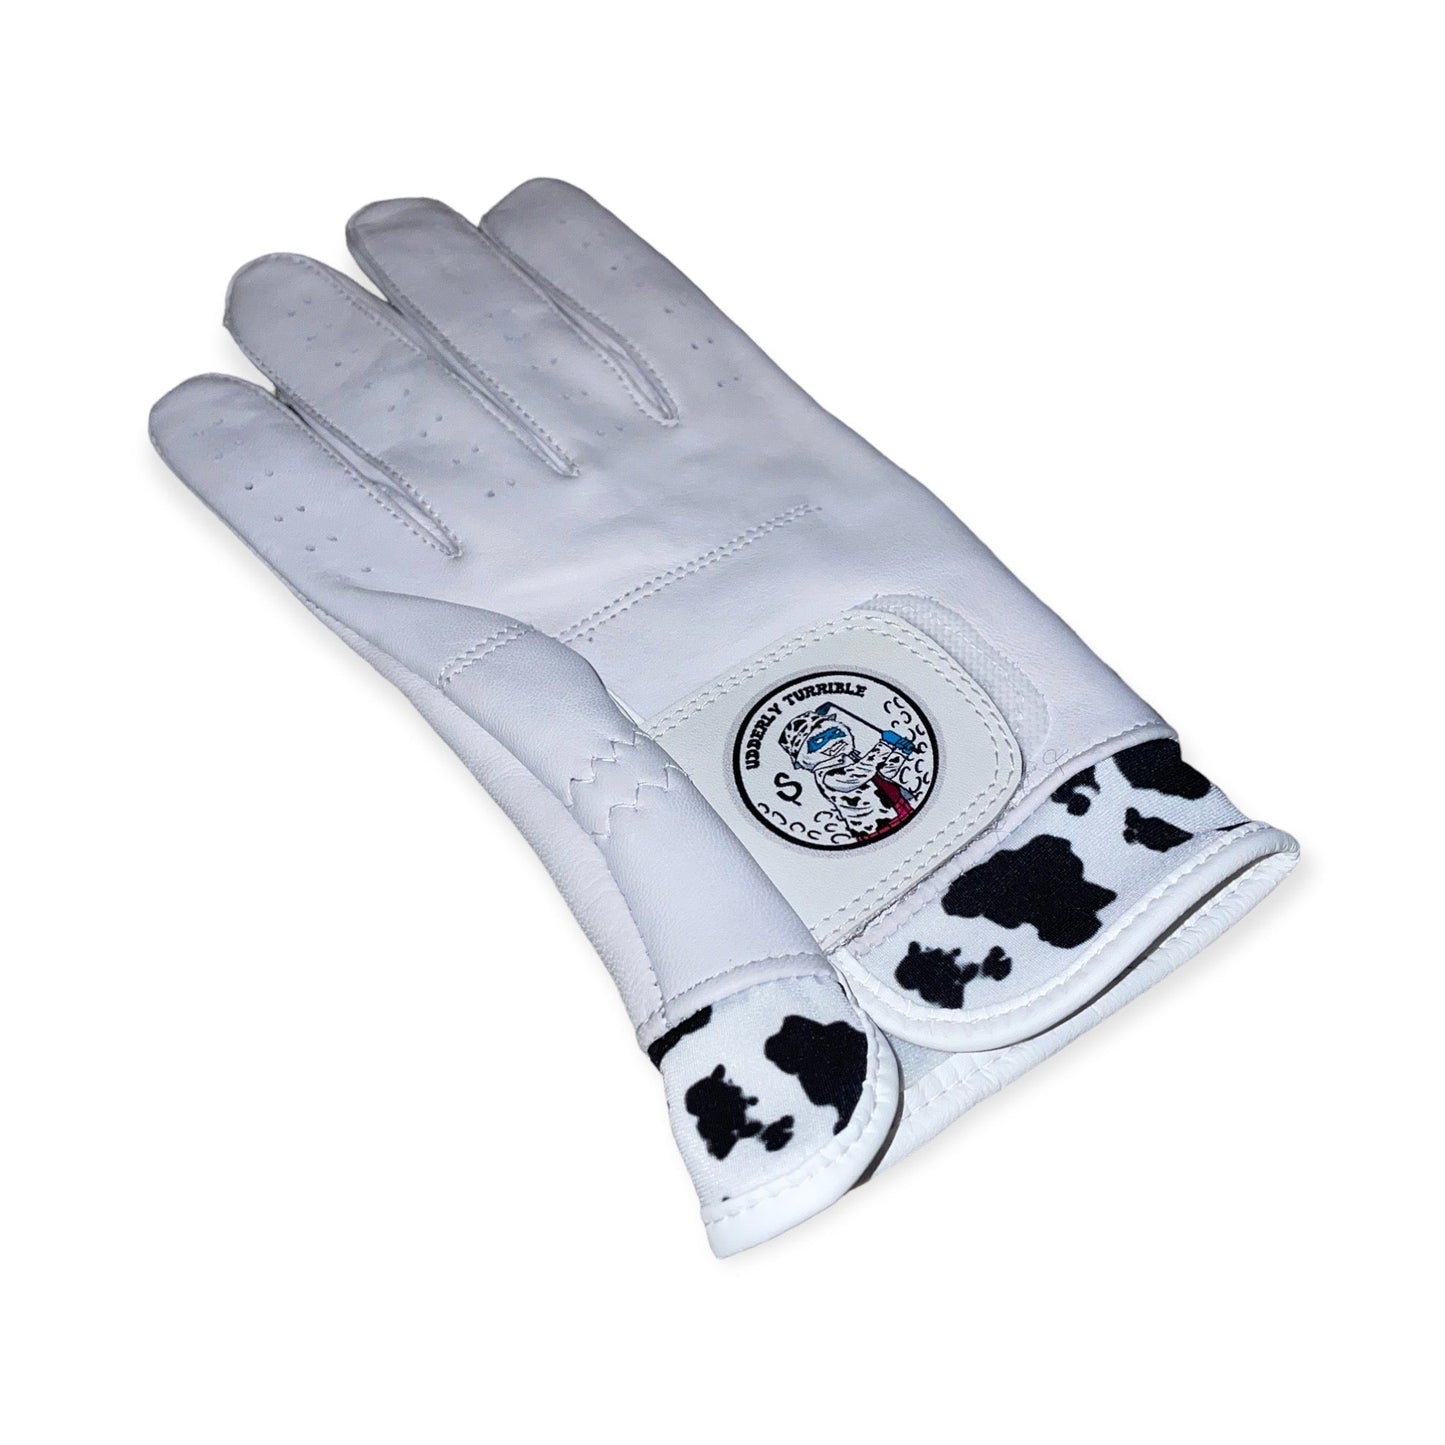 Womens White Udderly Turrible glove